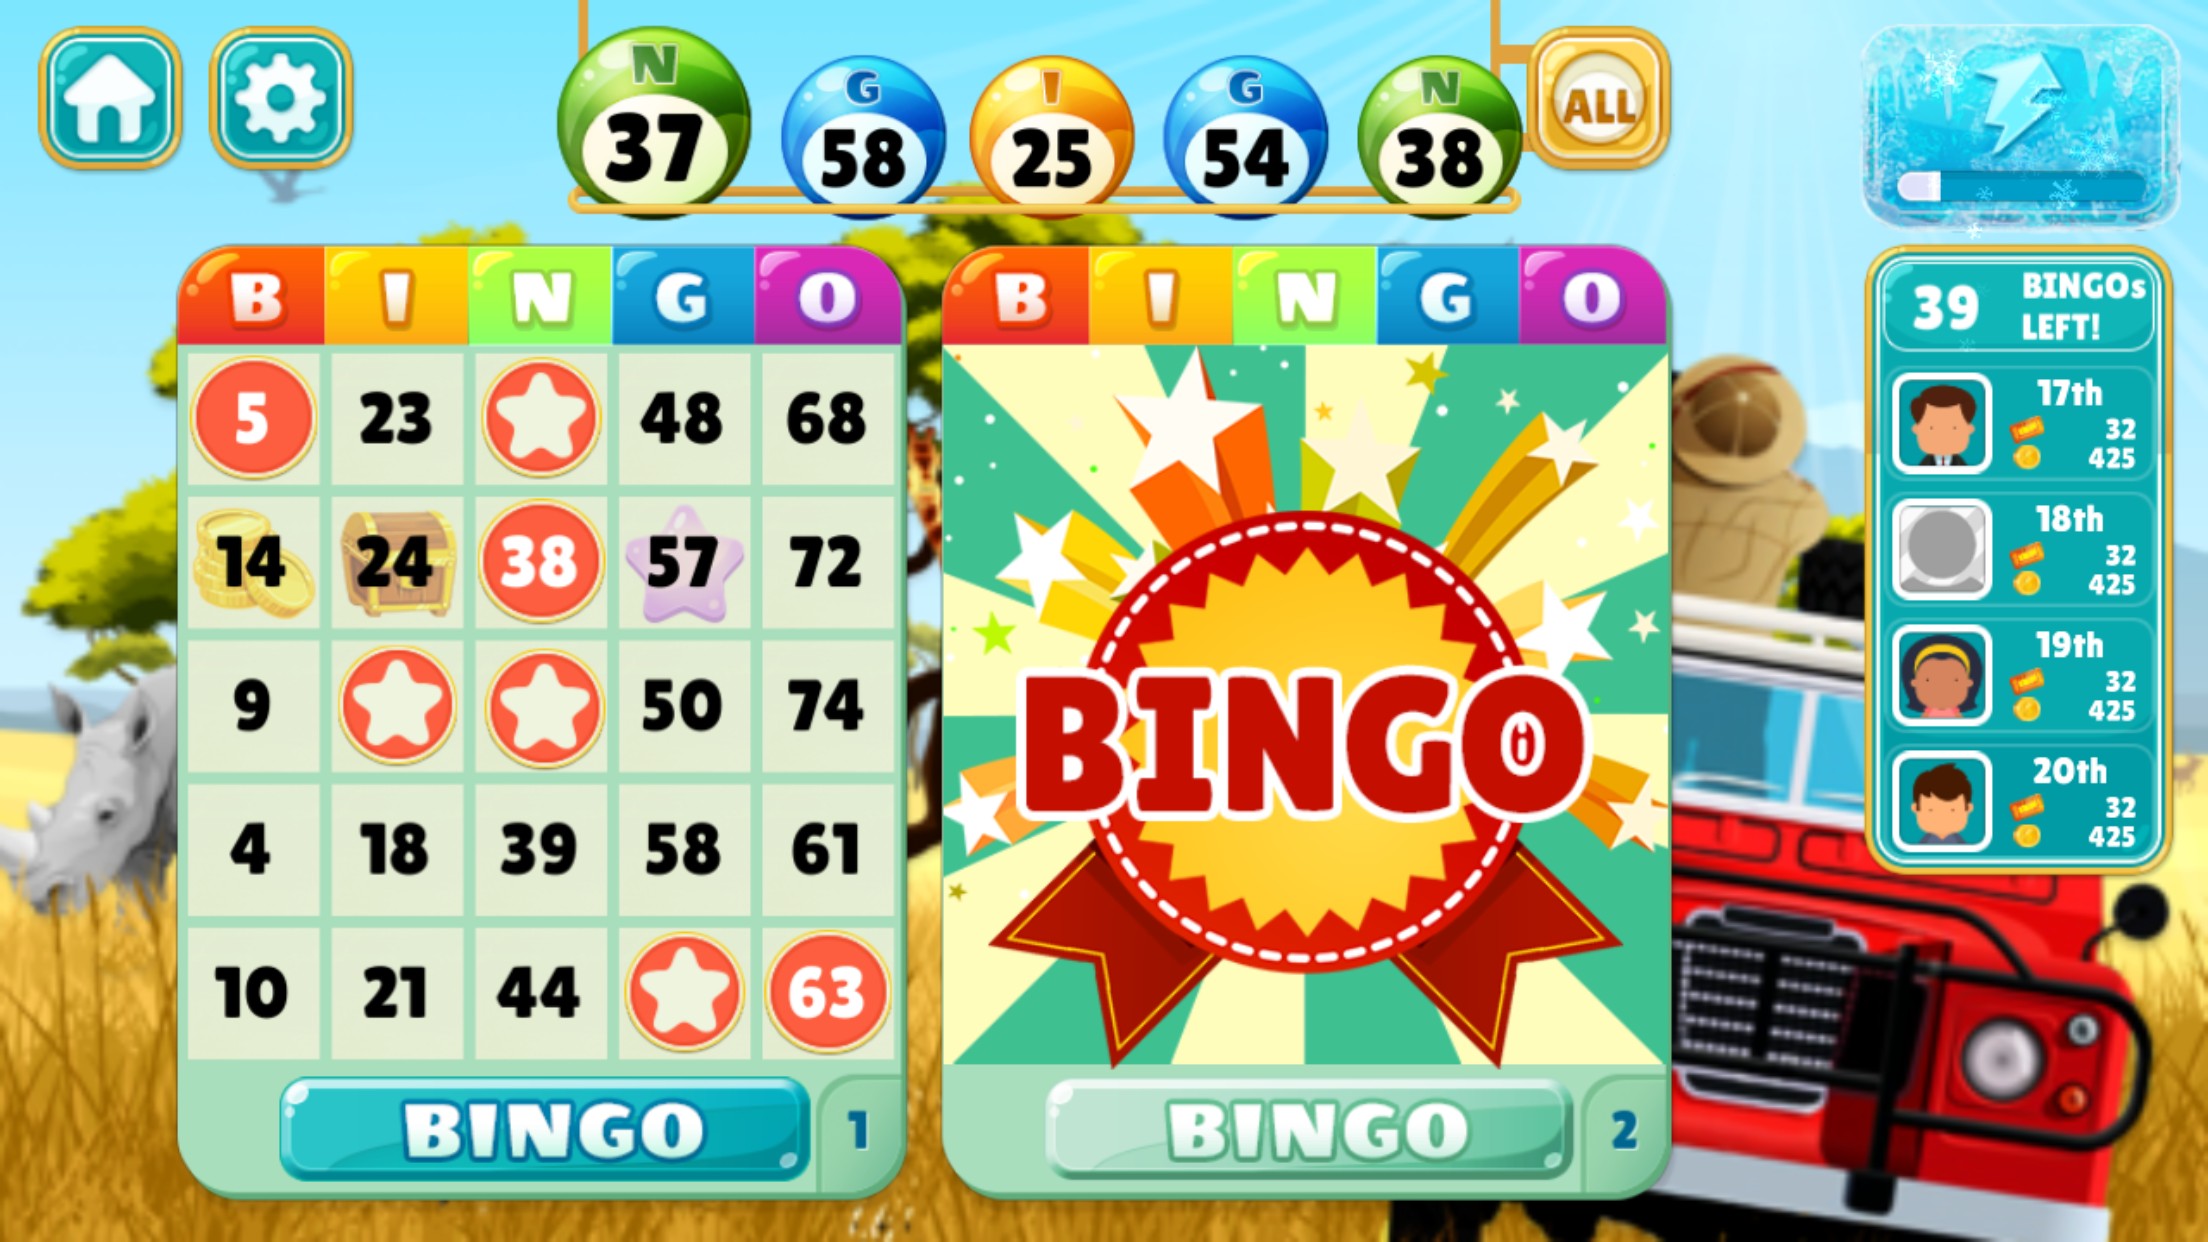 Play Online Bingo